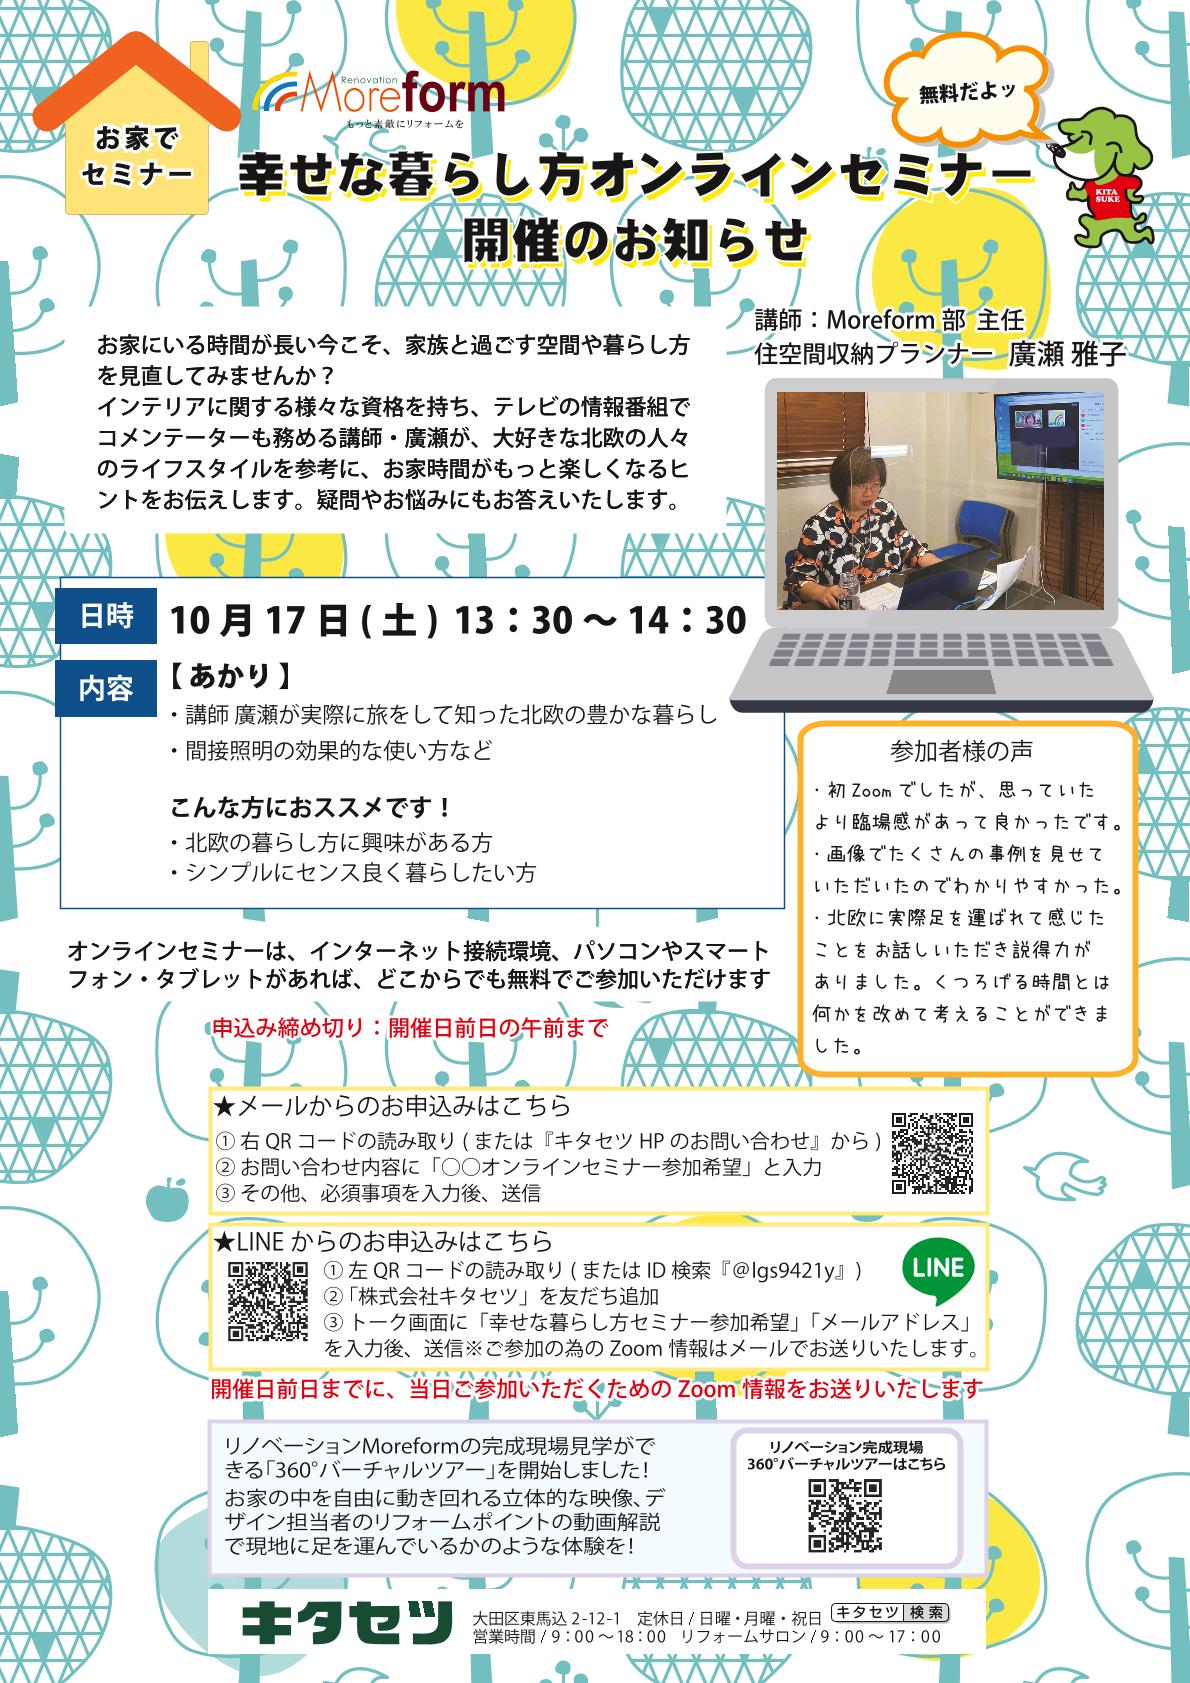 10月の幸せな暮らし方オンラインセミナー開催のお知らせ 大田区 品川区でリフォームをするならキタセツにお任せ